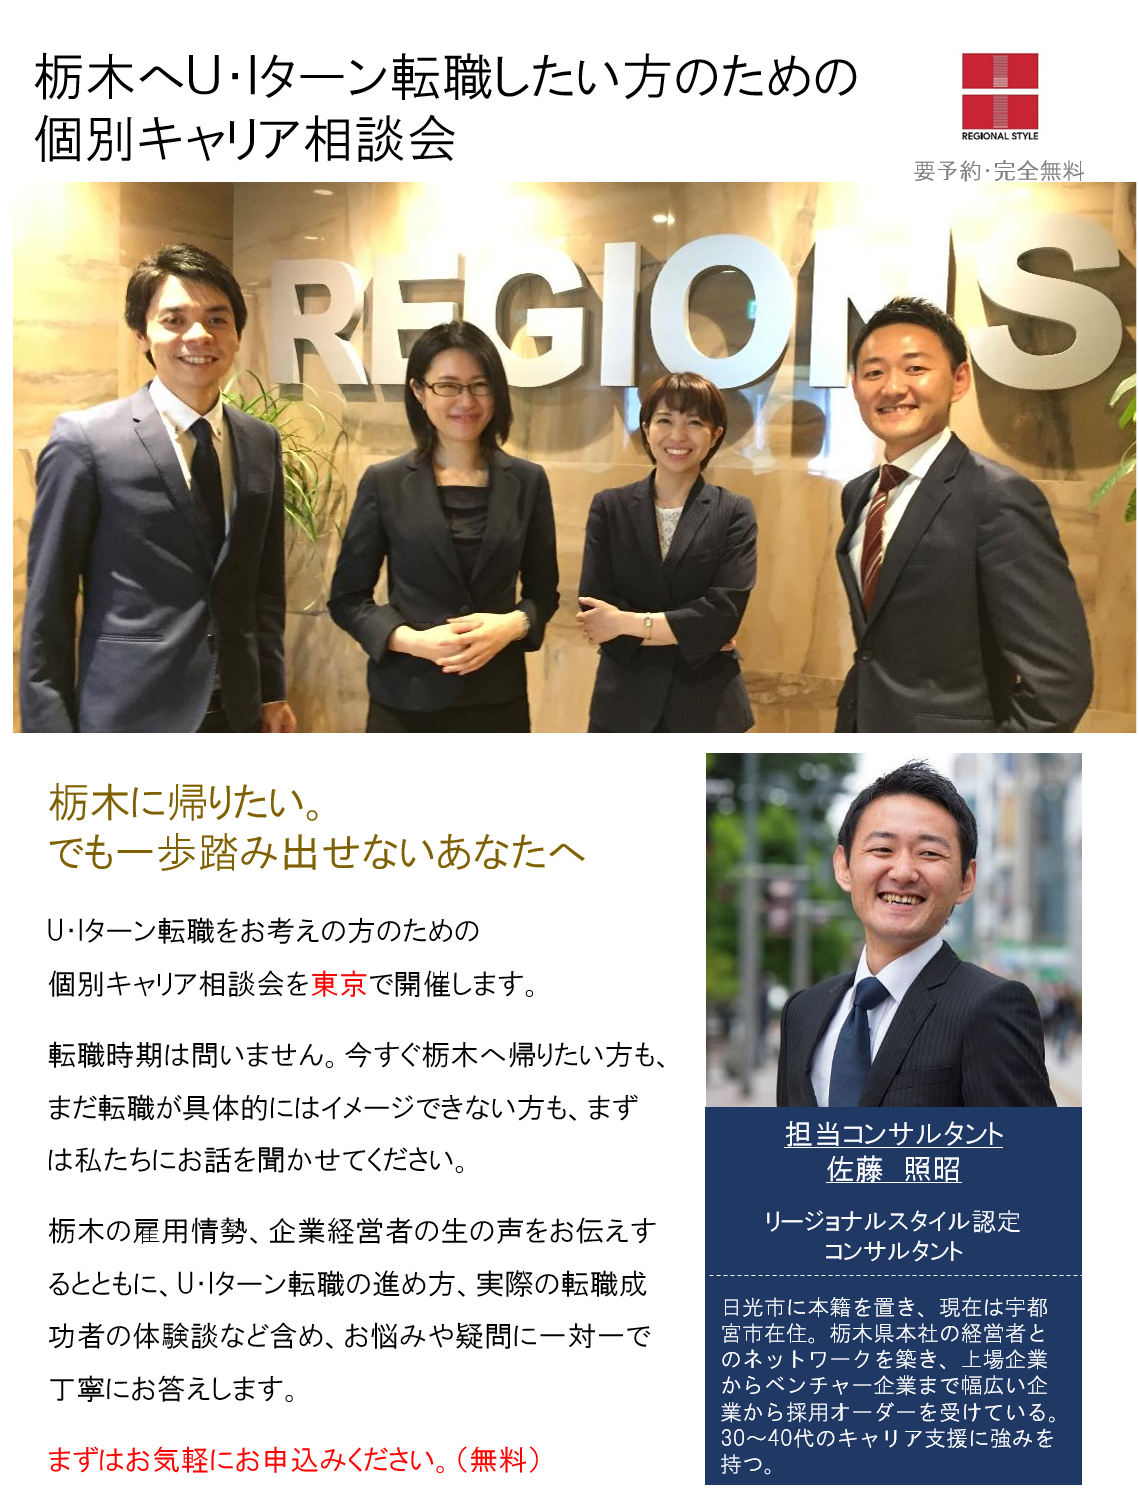 http://www.regional.co.jp/career_mt/0629tochigitokyo.png